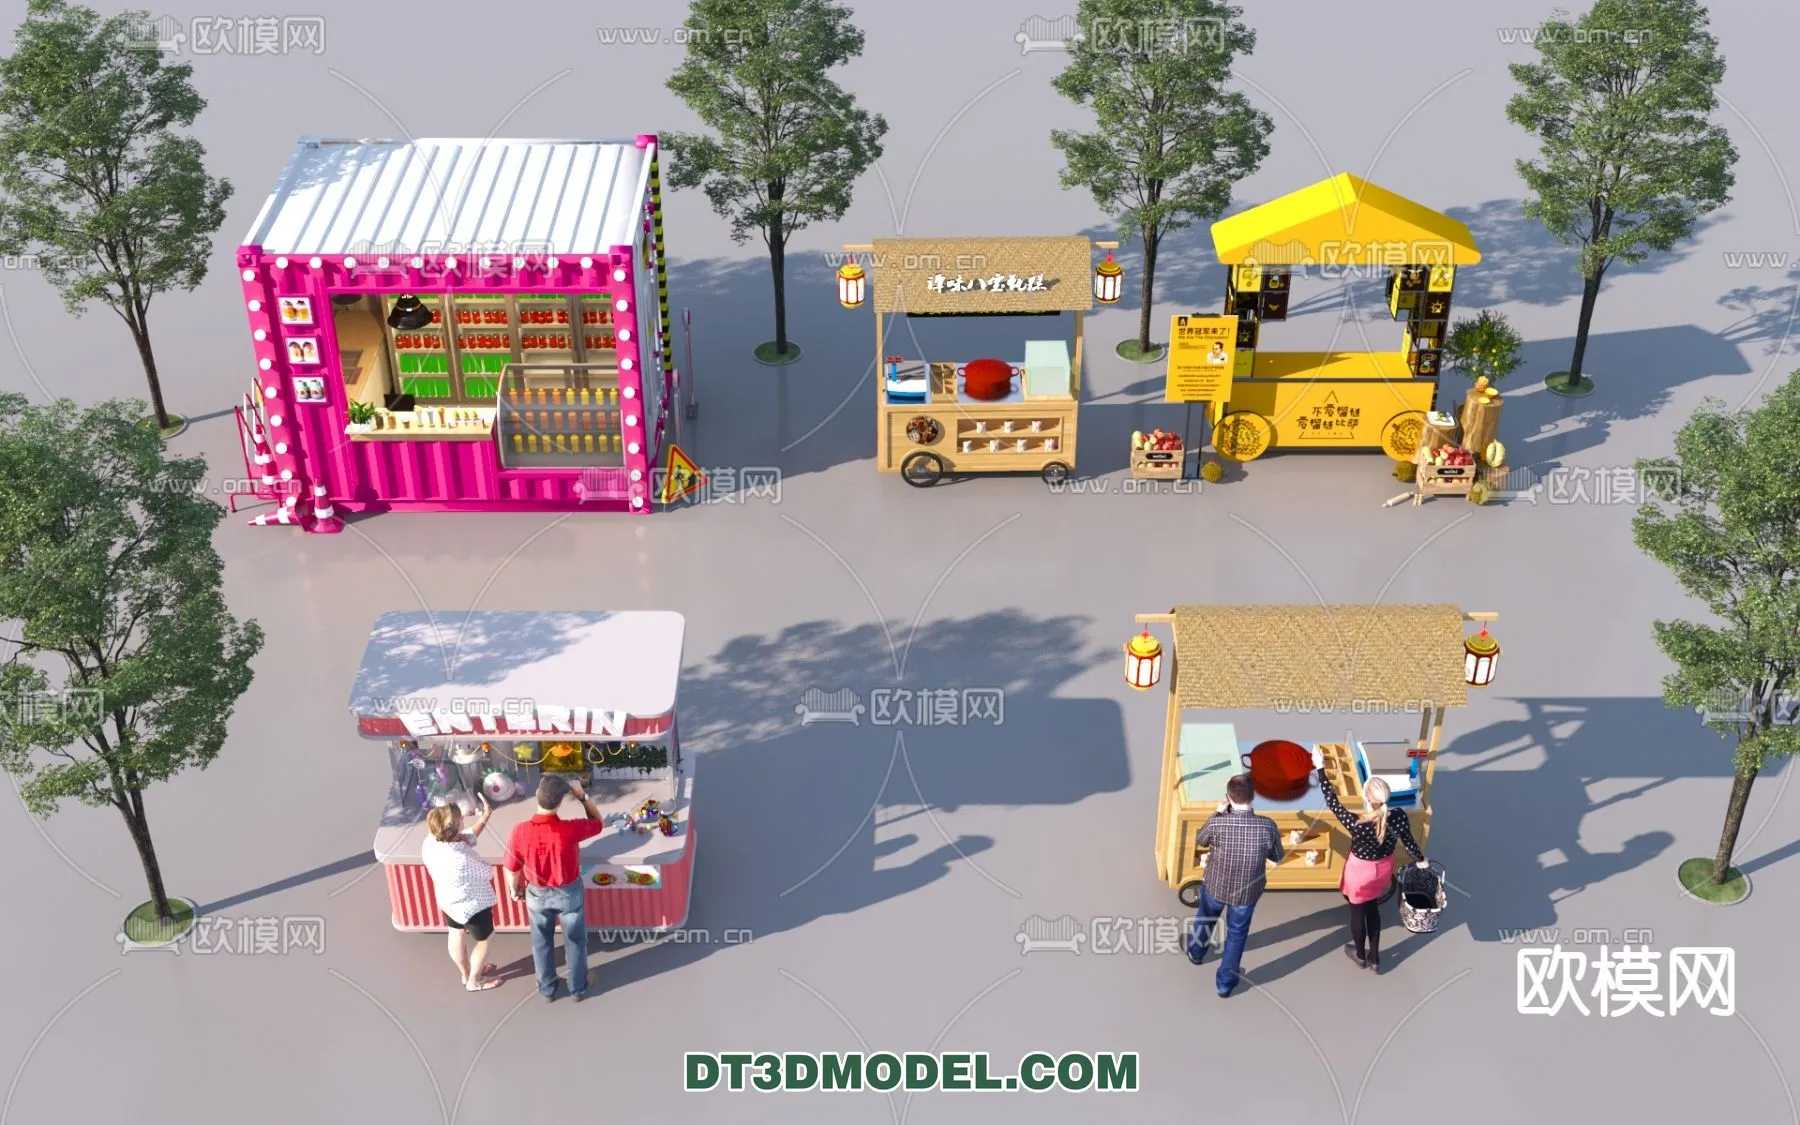 STREET VENDOR CART – 3D MODELS – 096